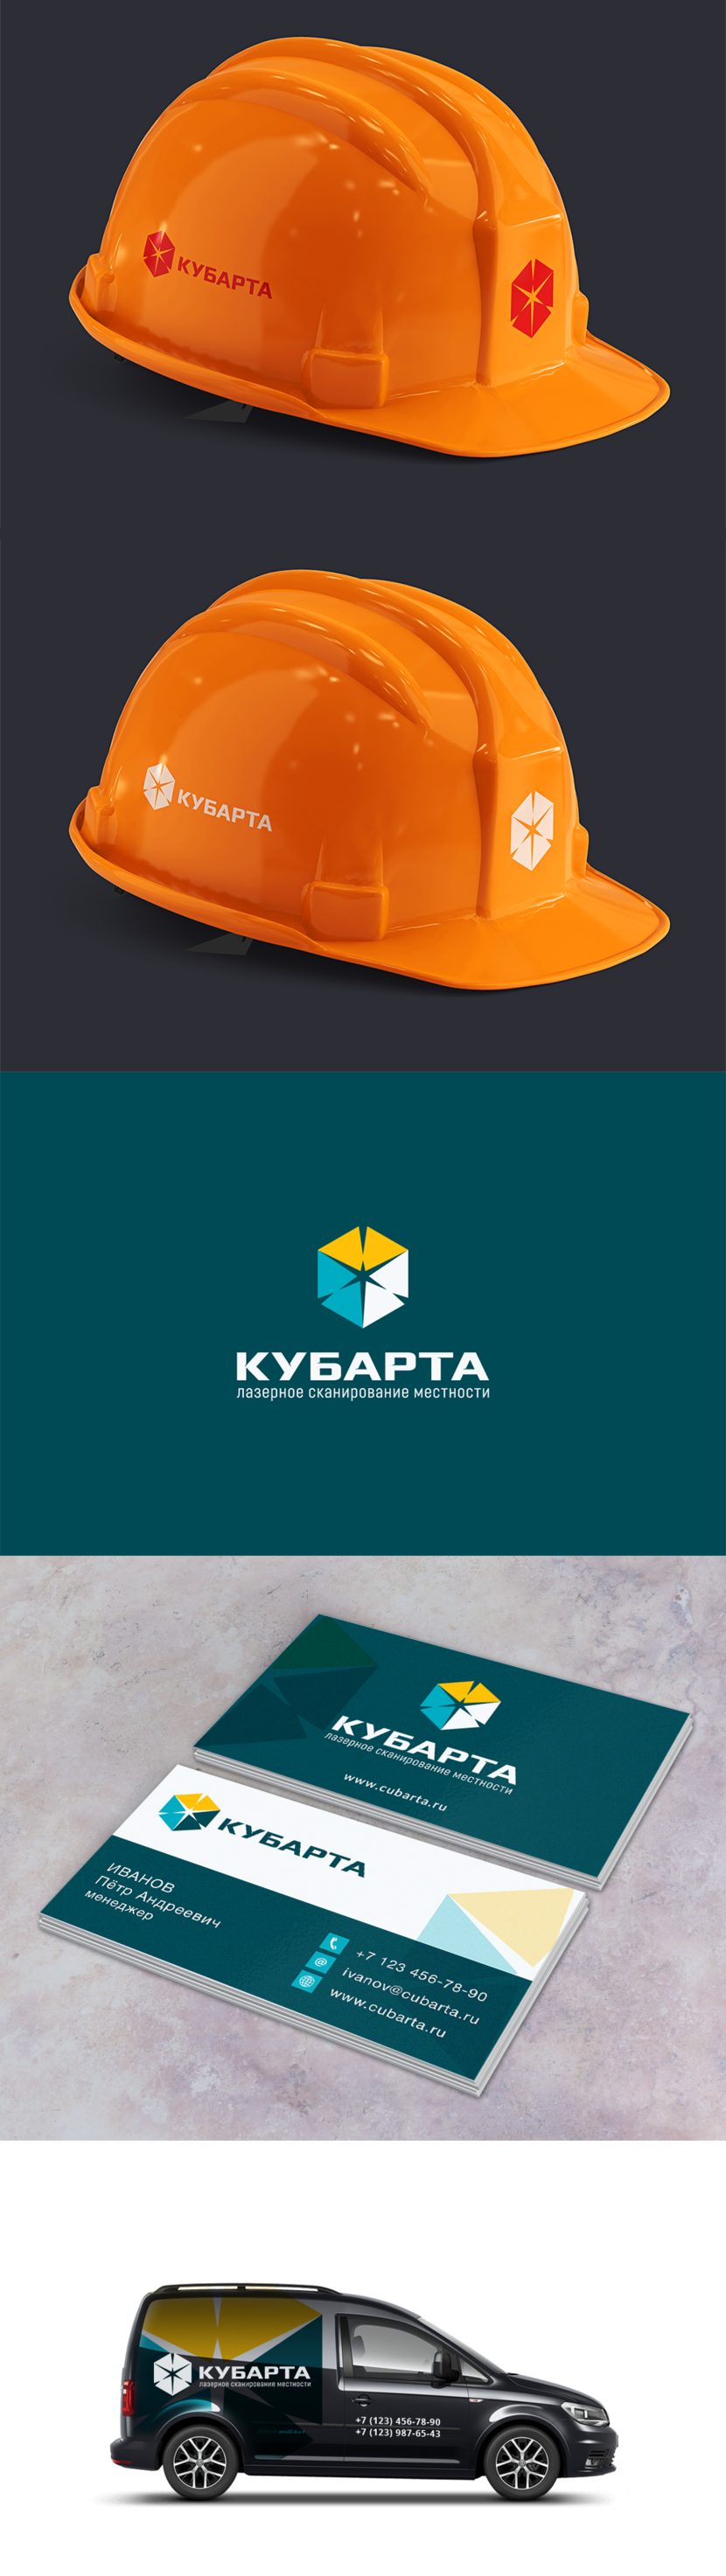 Кубарта2 - Создание логотипа и фирменного стиля